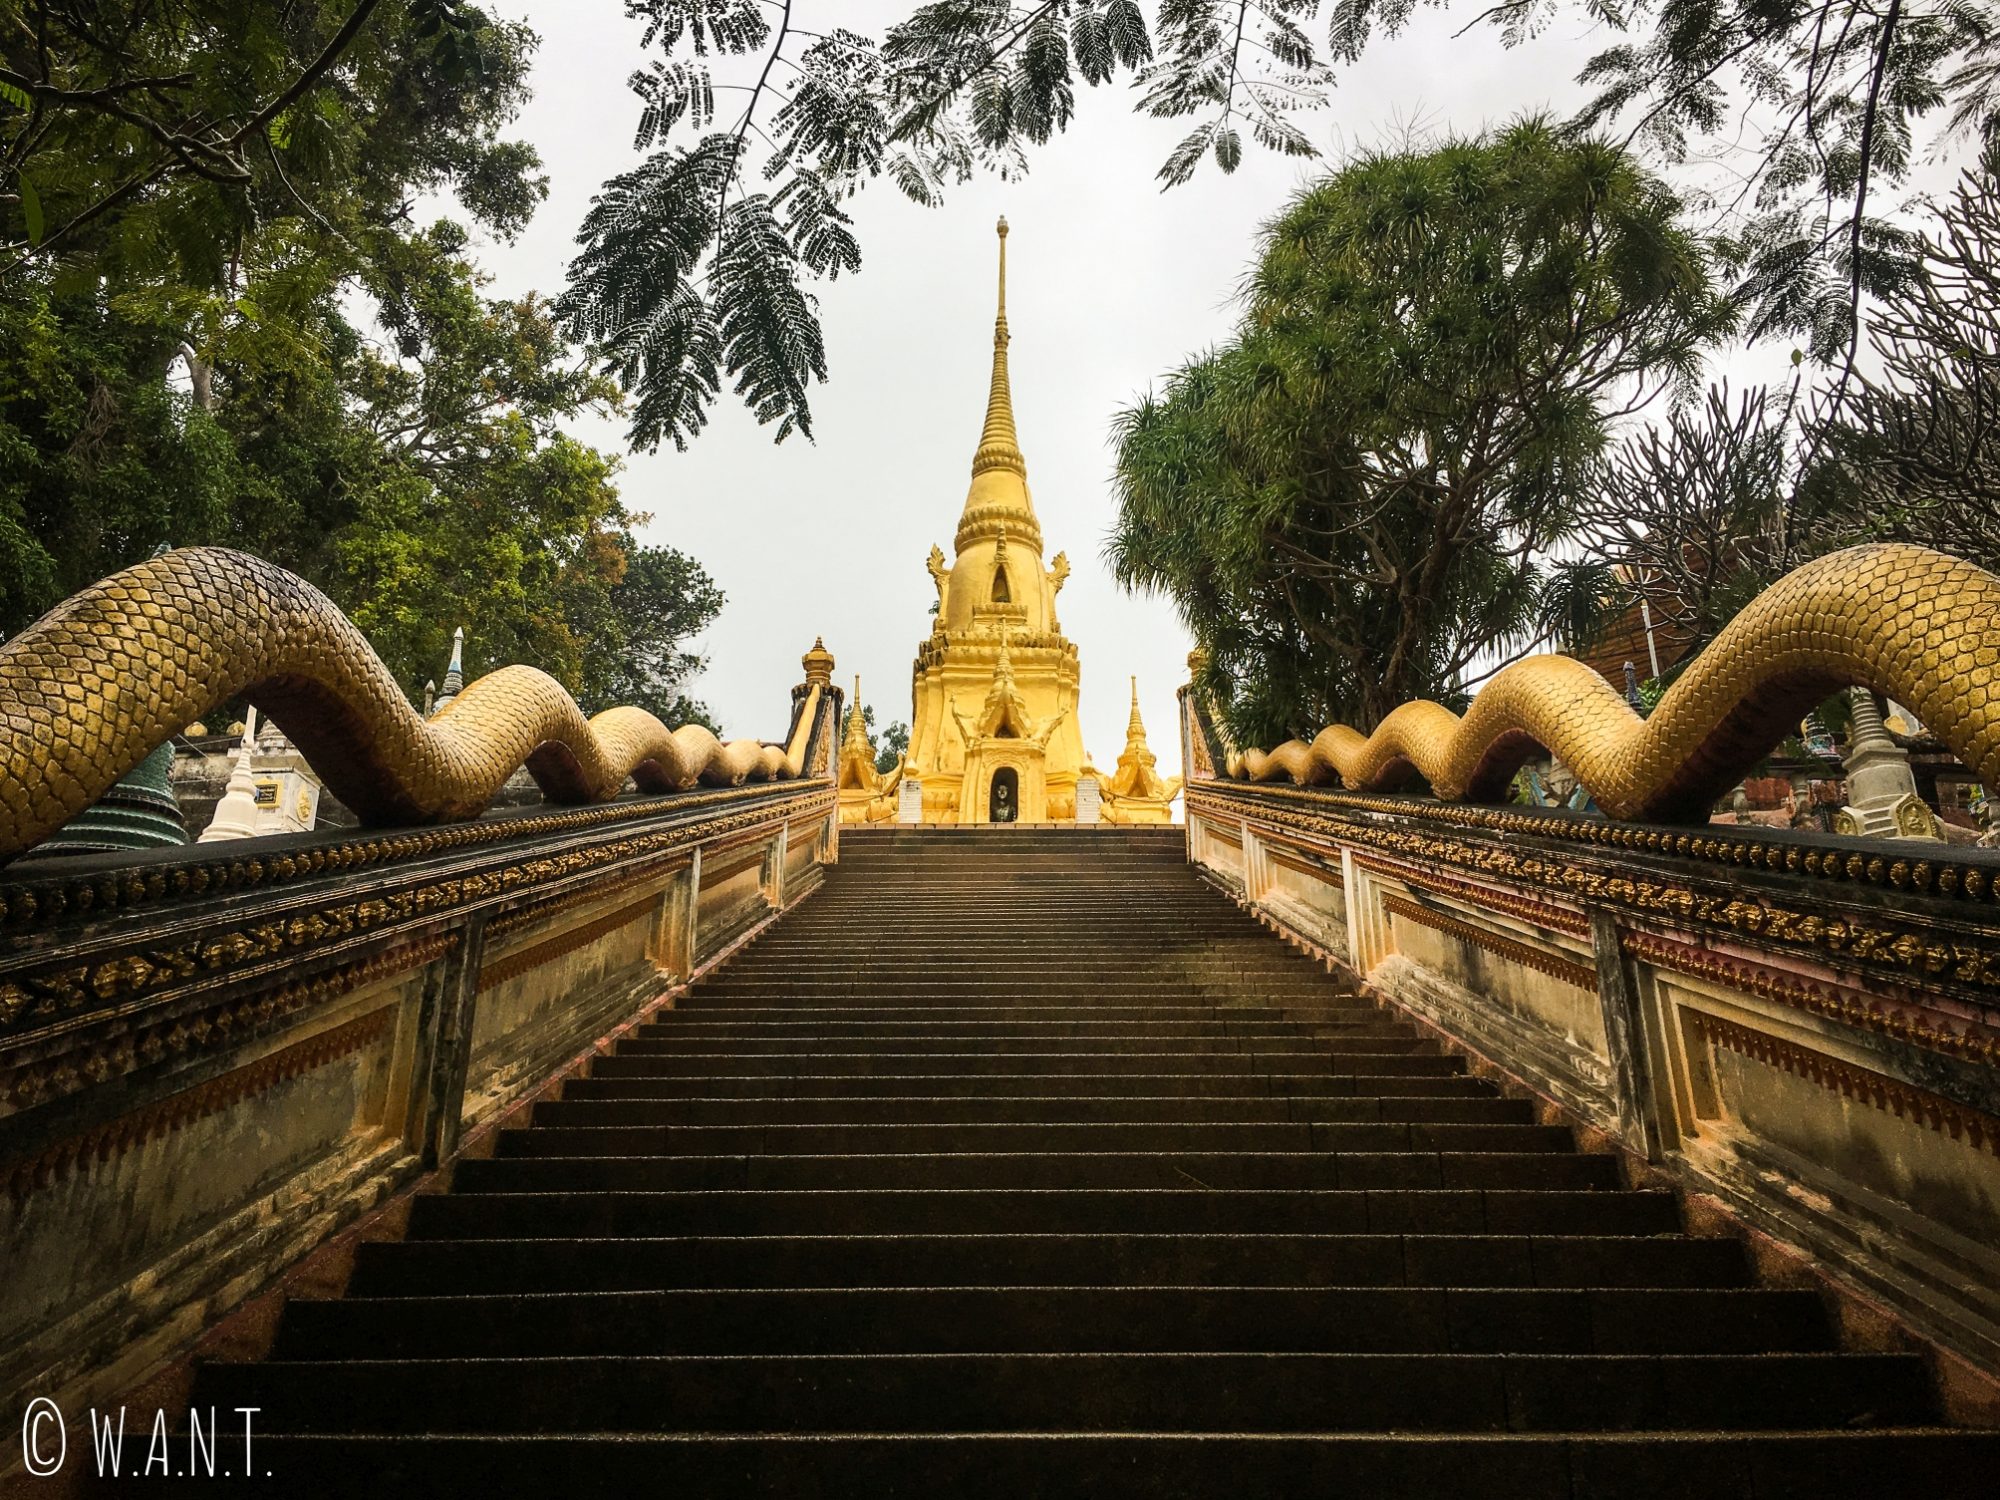 Escaliers et stupa doré au Wat Sila Ngu sur l'île de Koh Samui